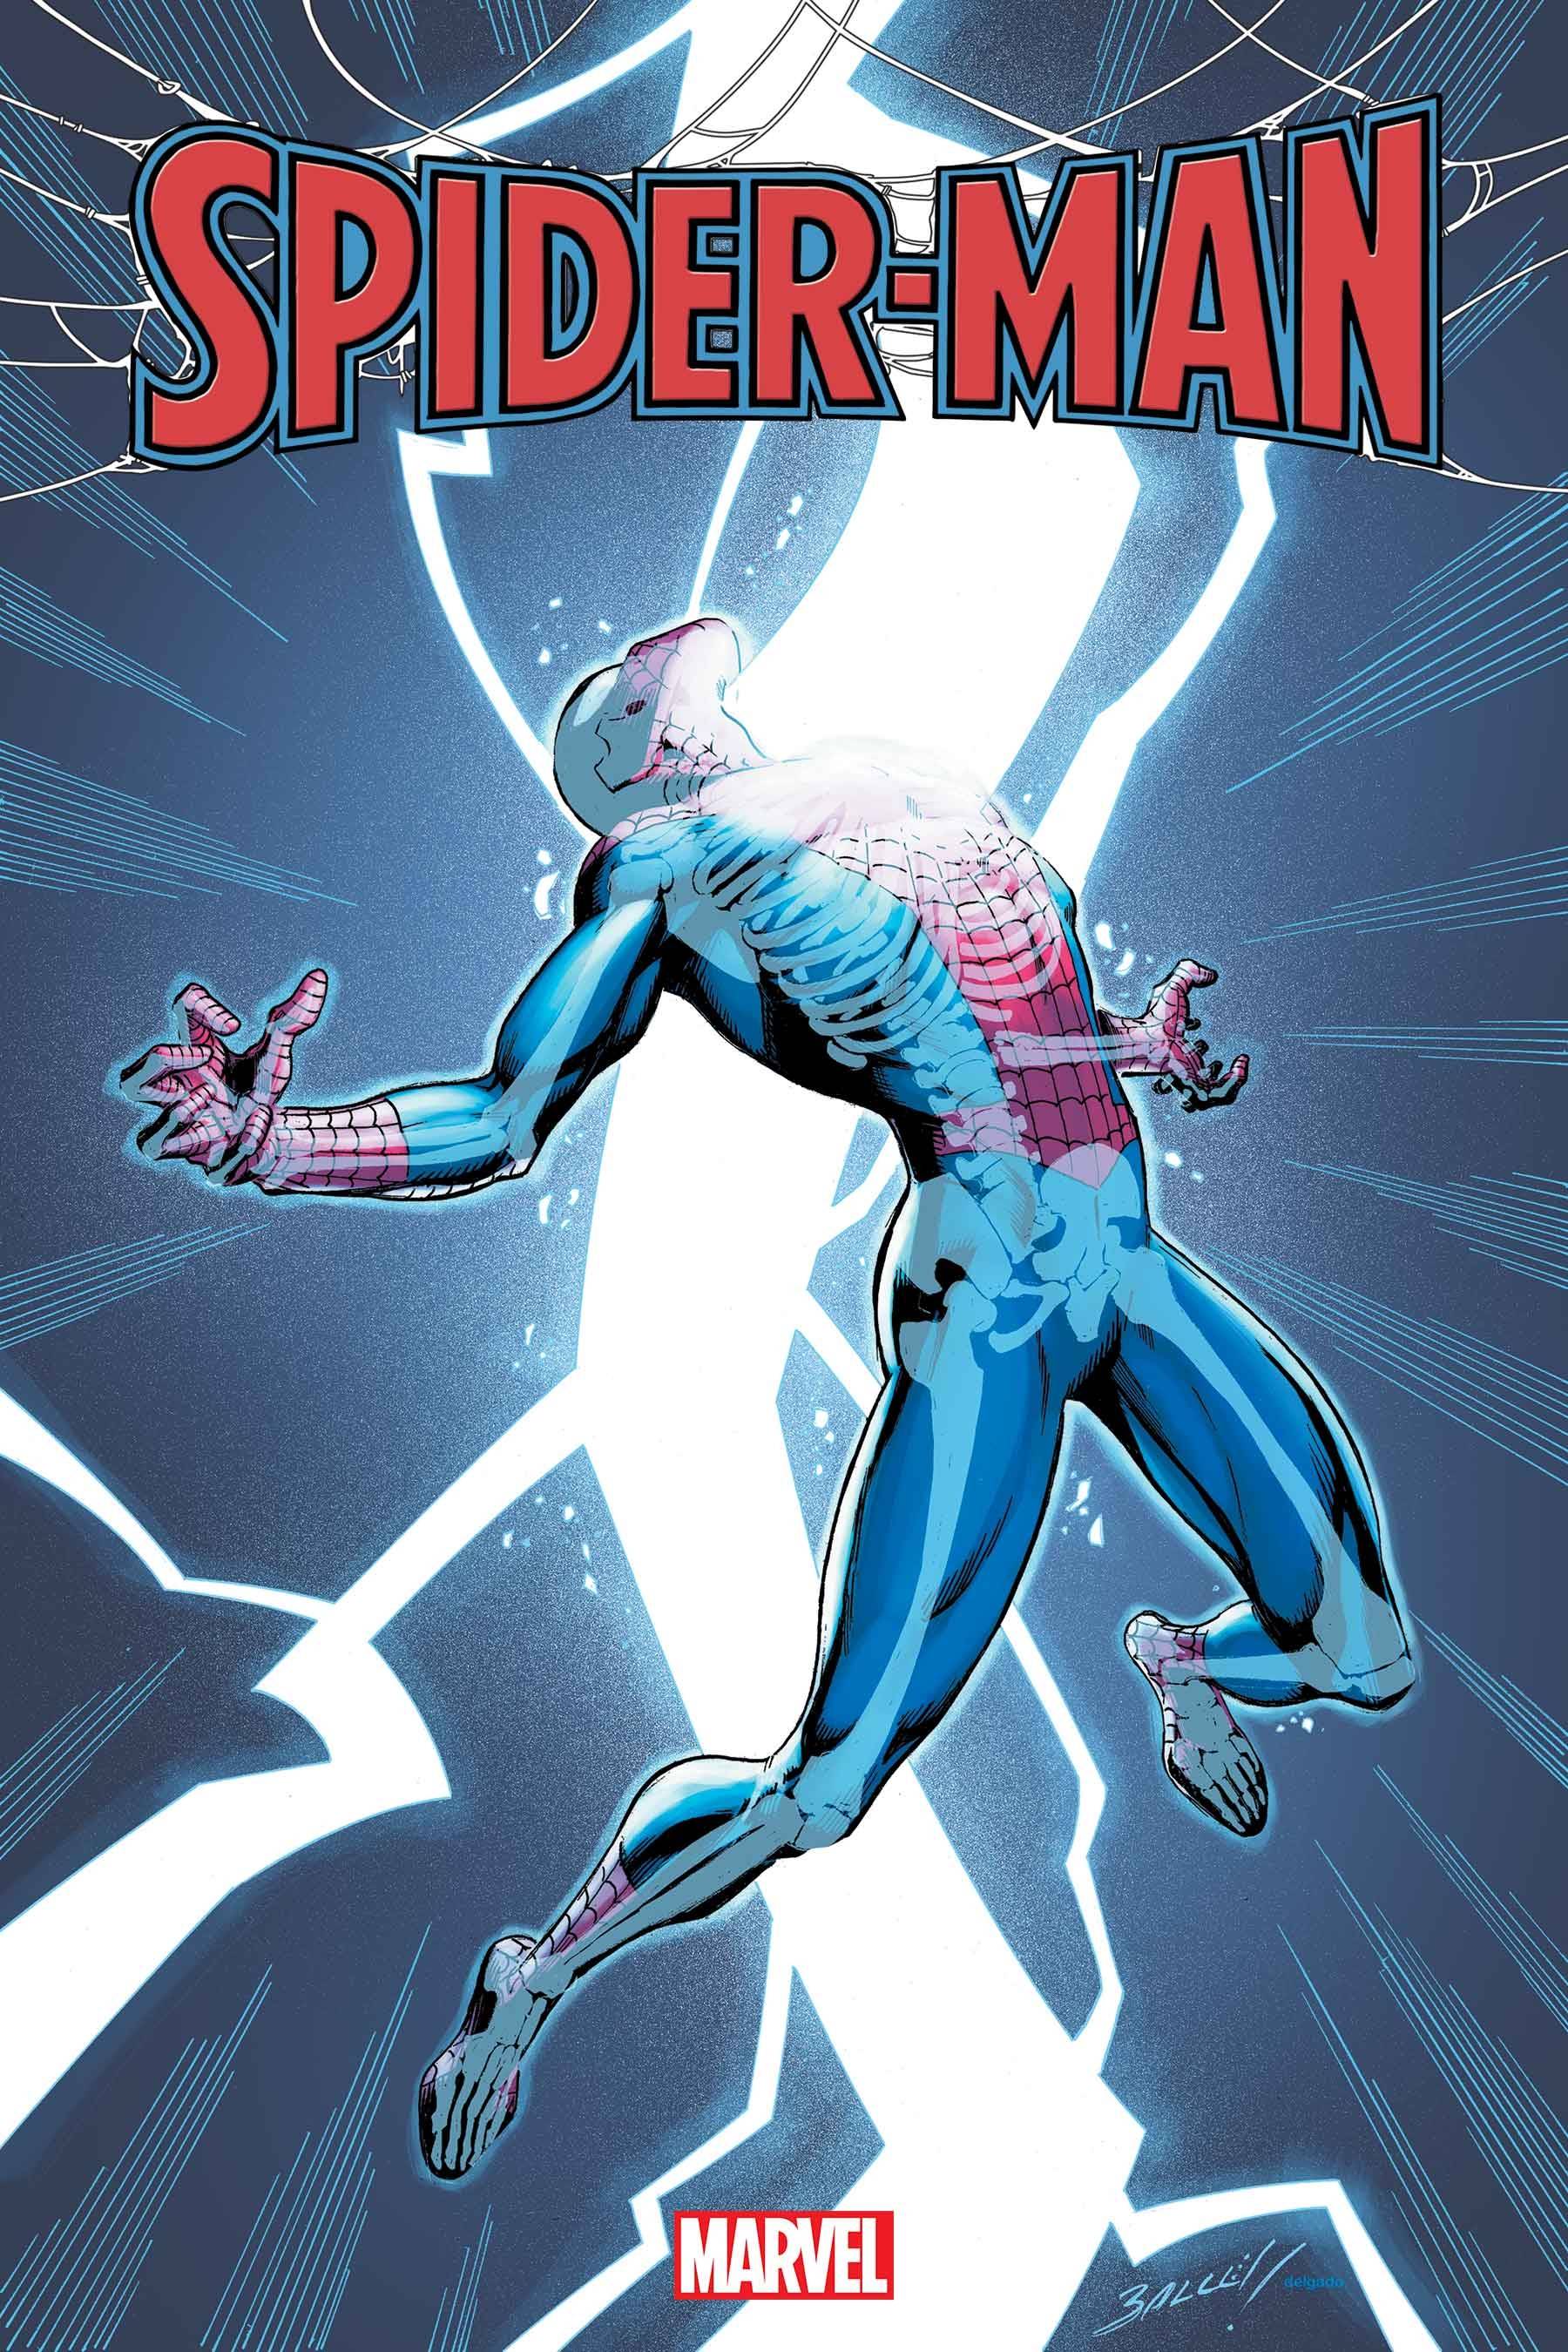 SPIDER-MAN #8